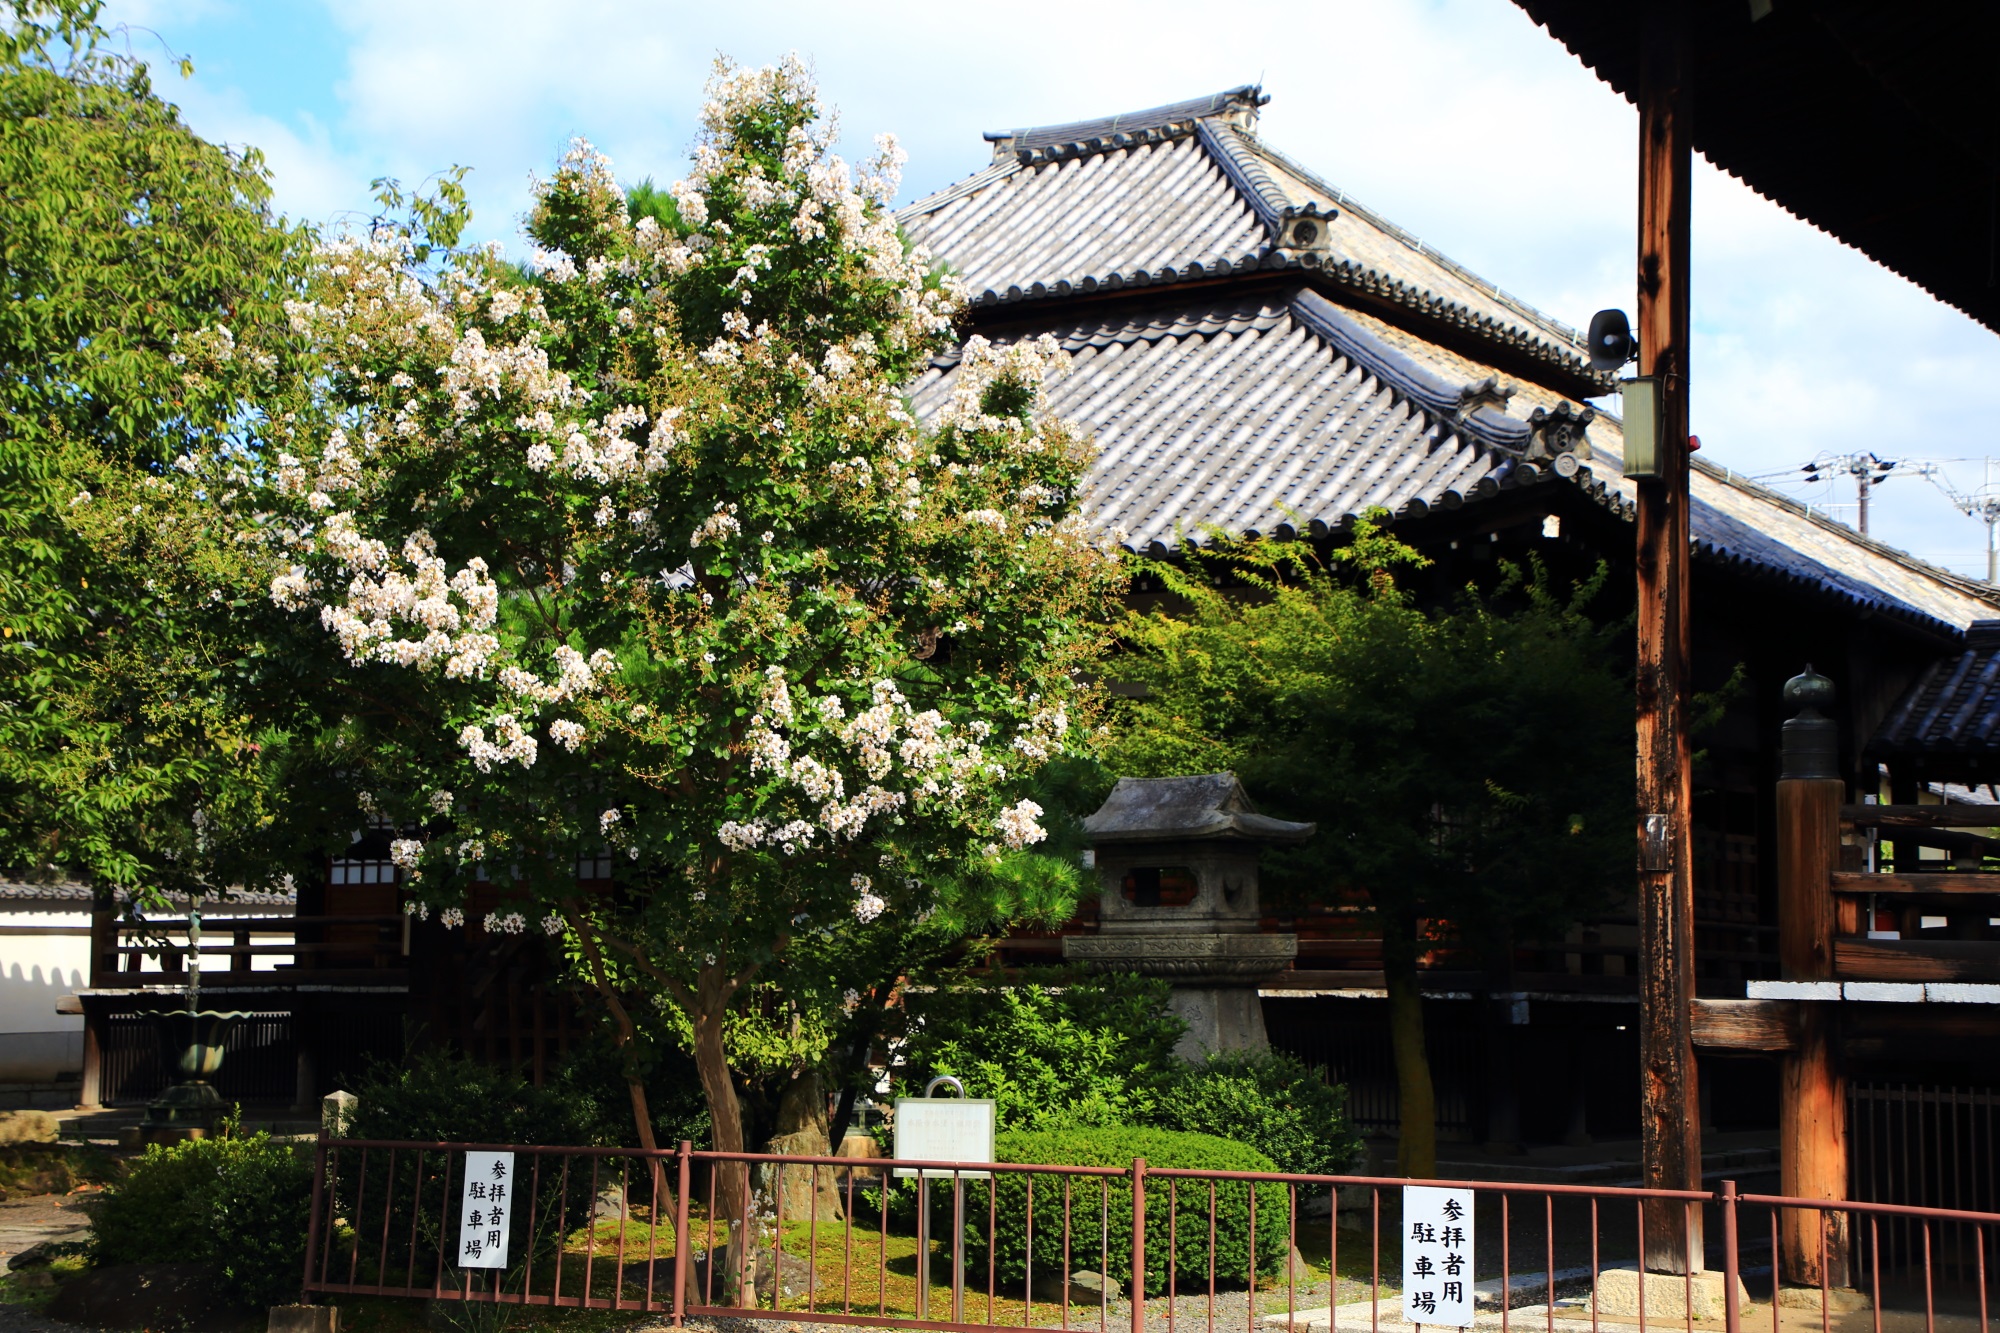 本隆寺の本堂にむかって左側の白い百日紅